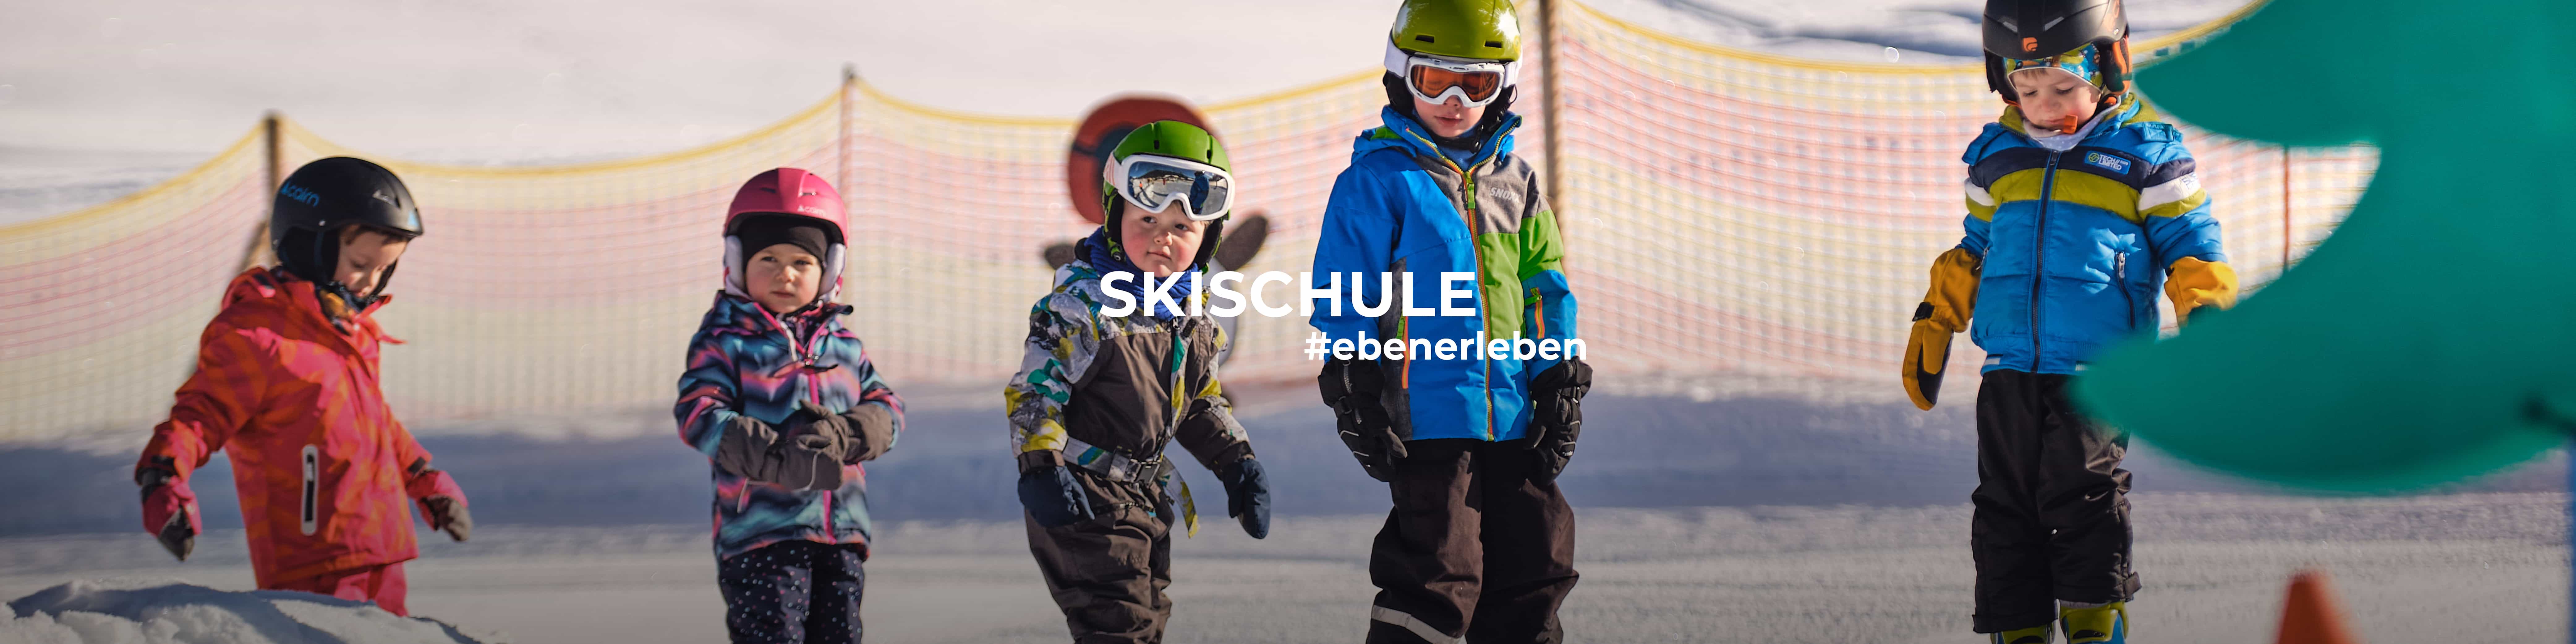 Learning to ski like the pros in the children ski school in Eben